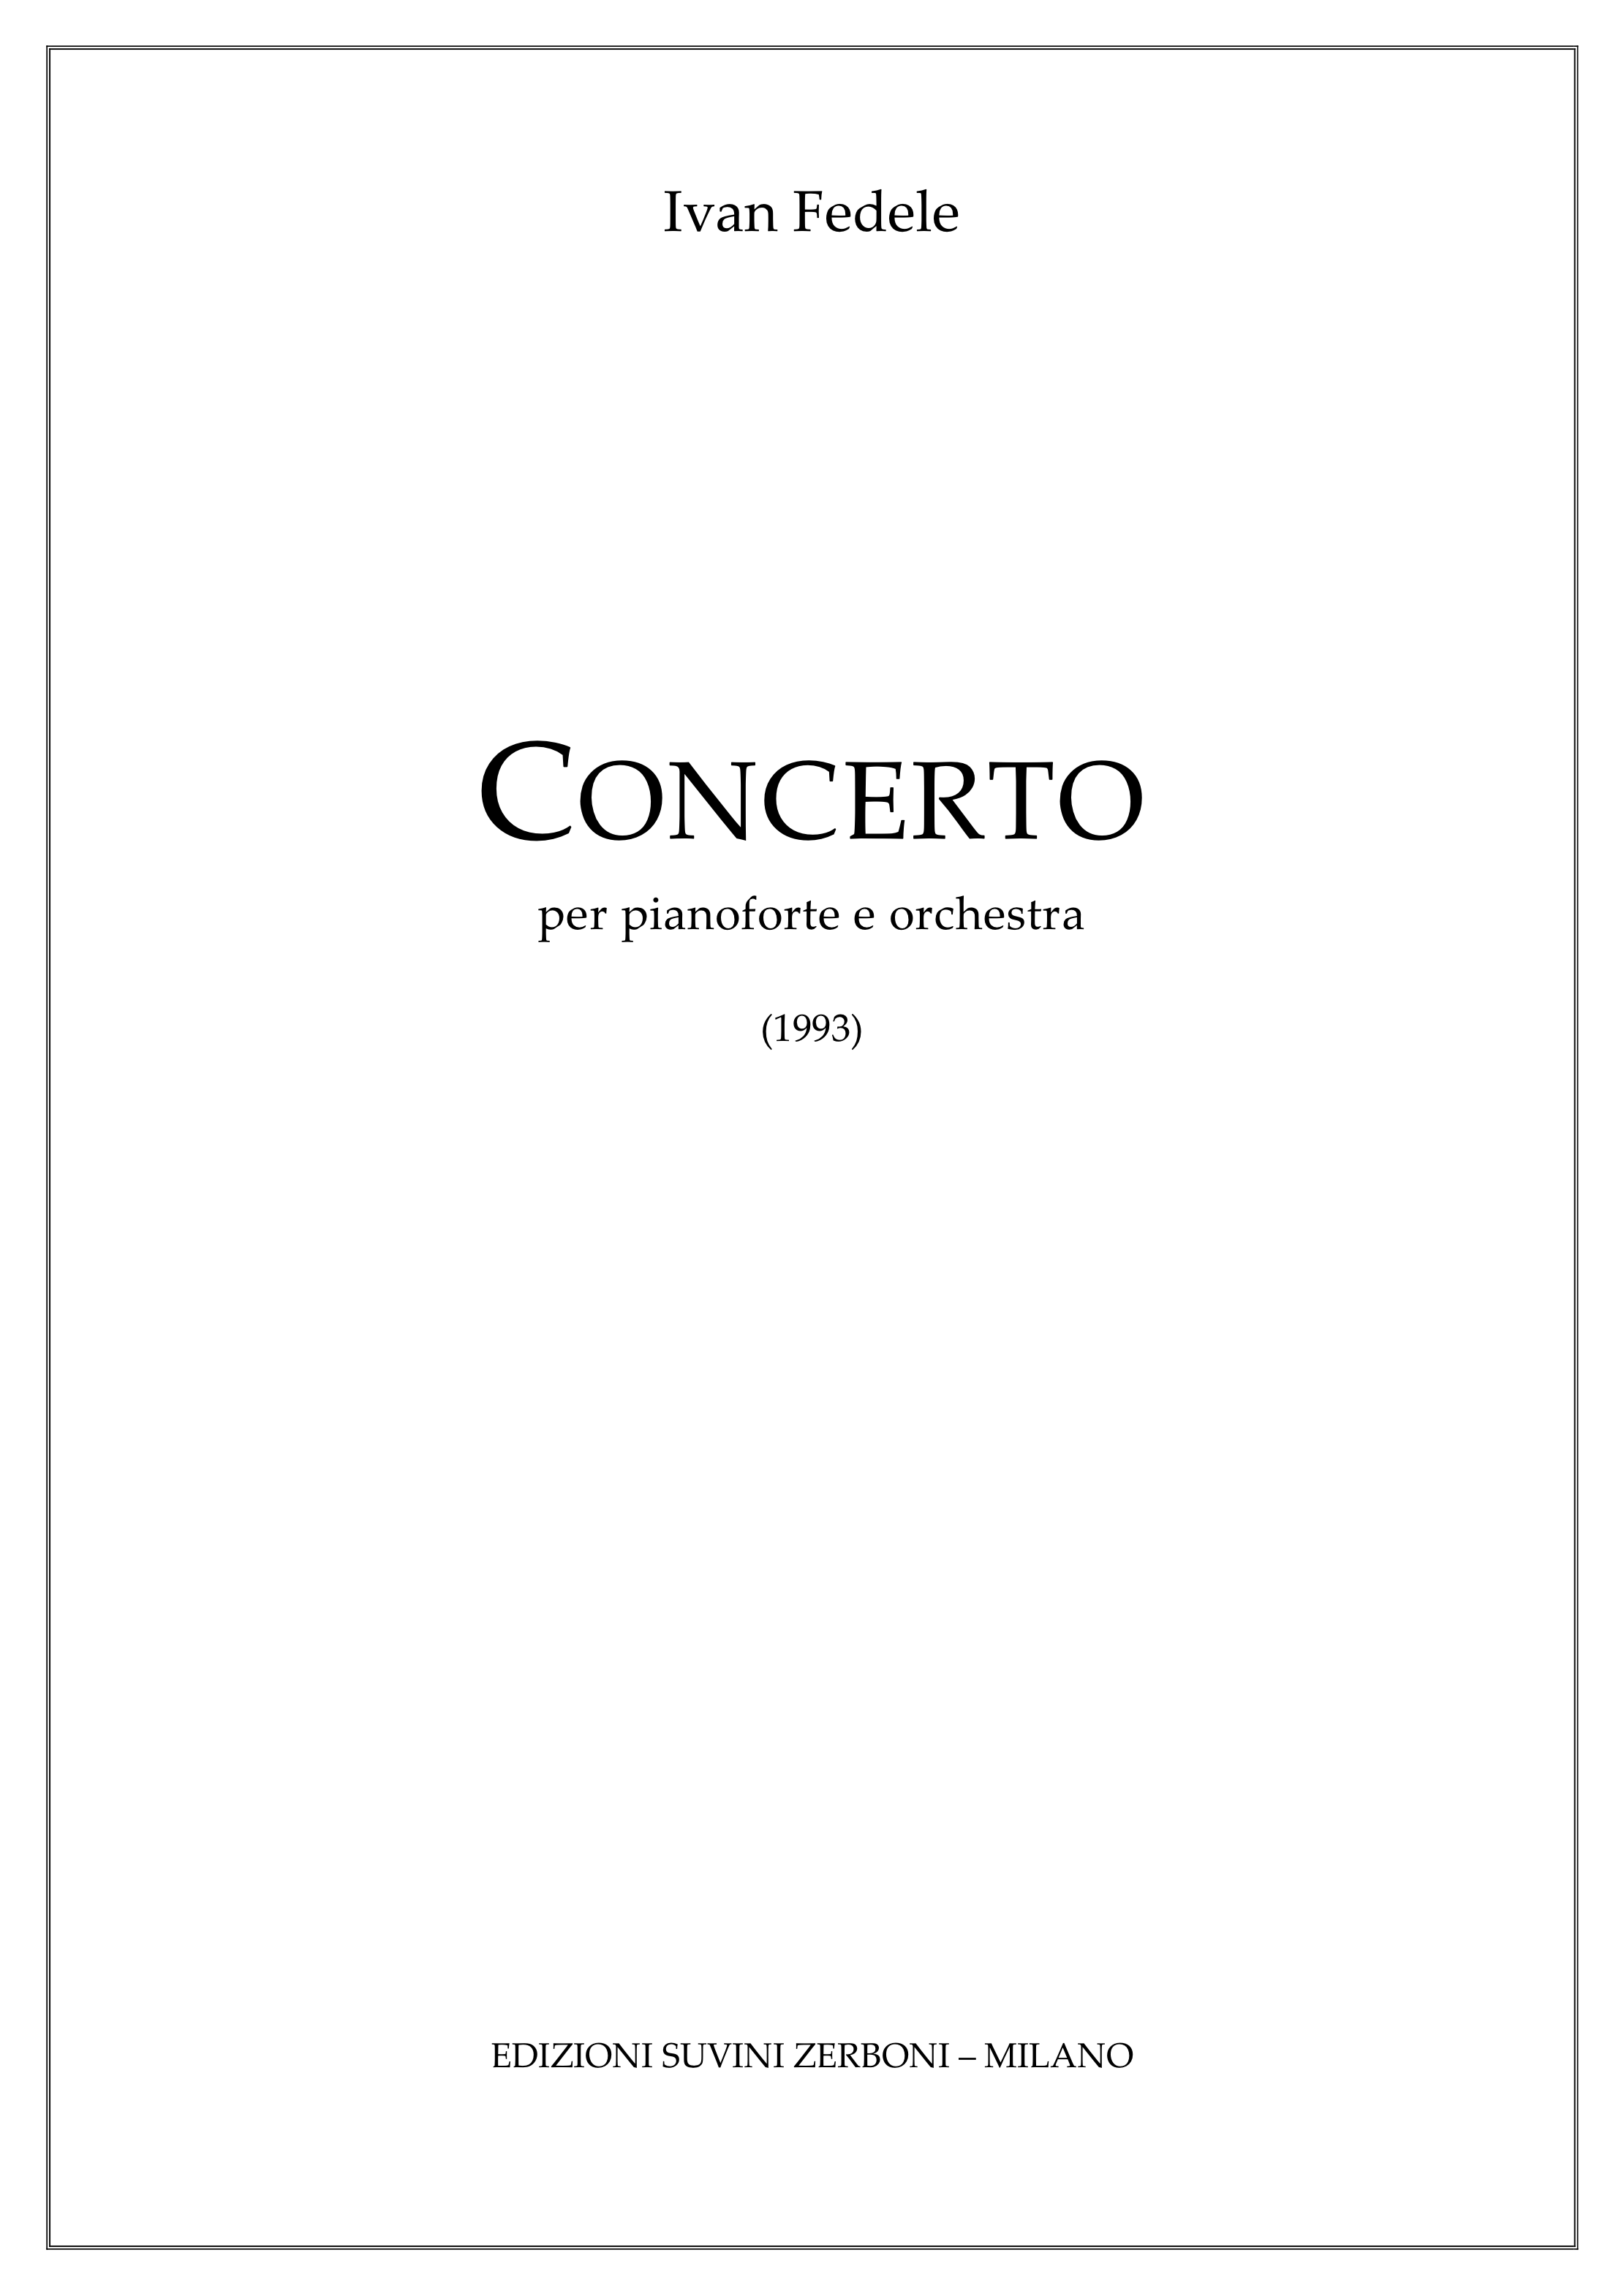 Concerto_per pianoforte e orchestra _Fedele 1